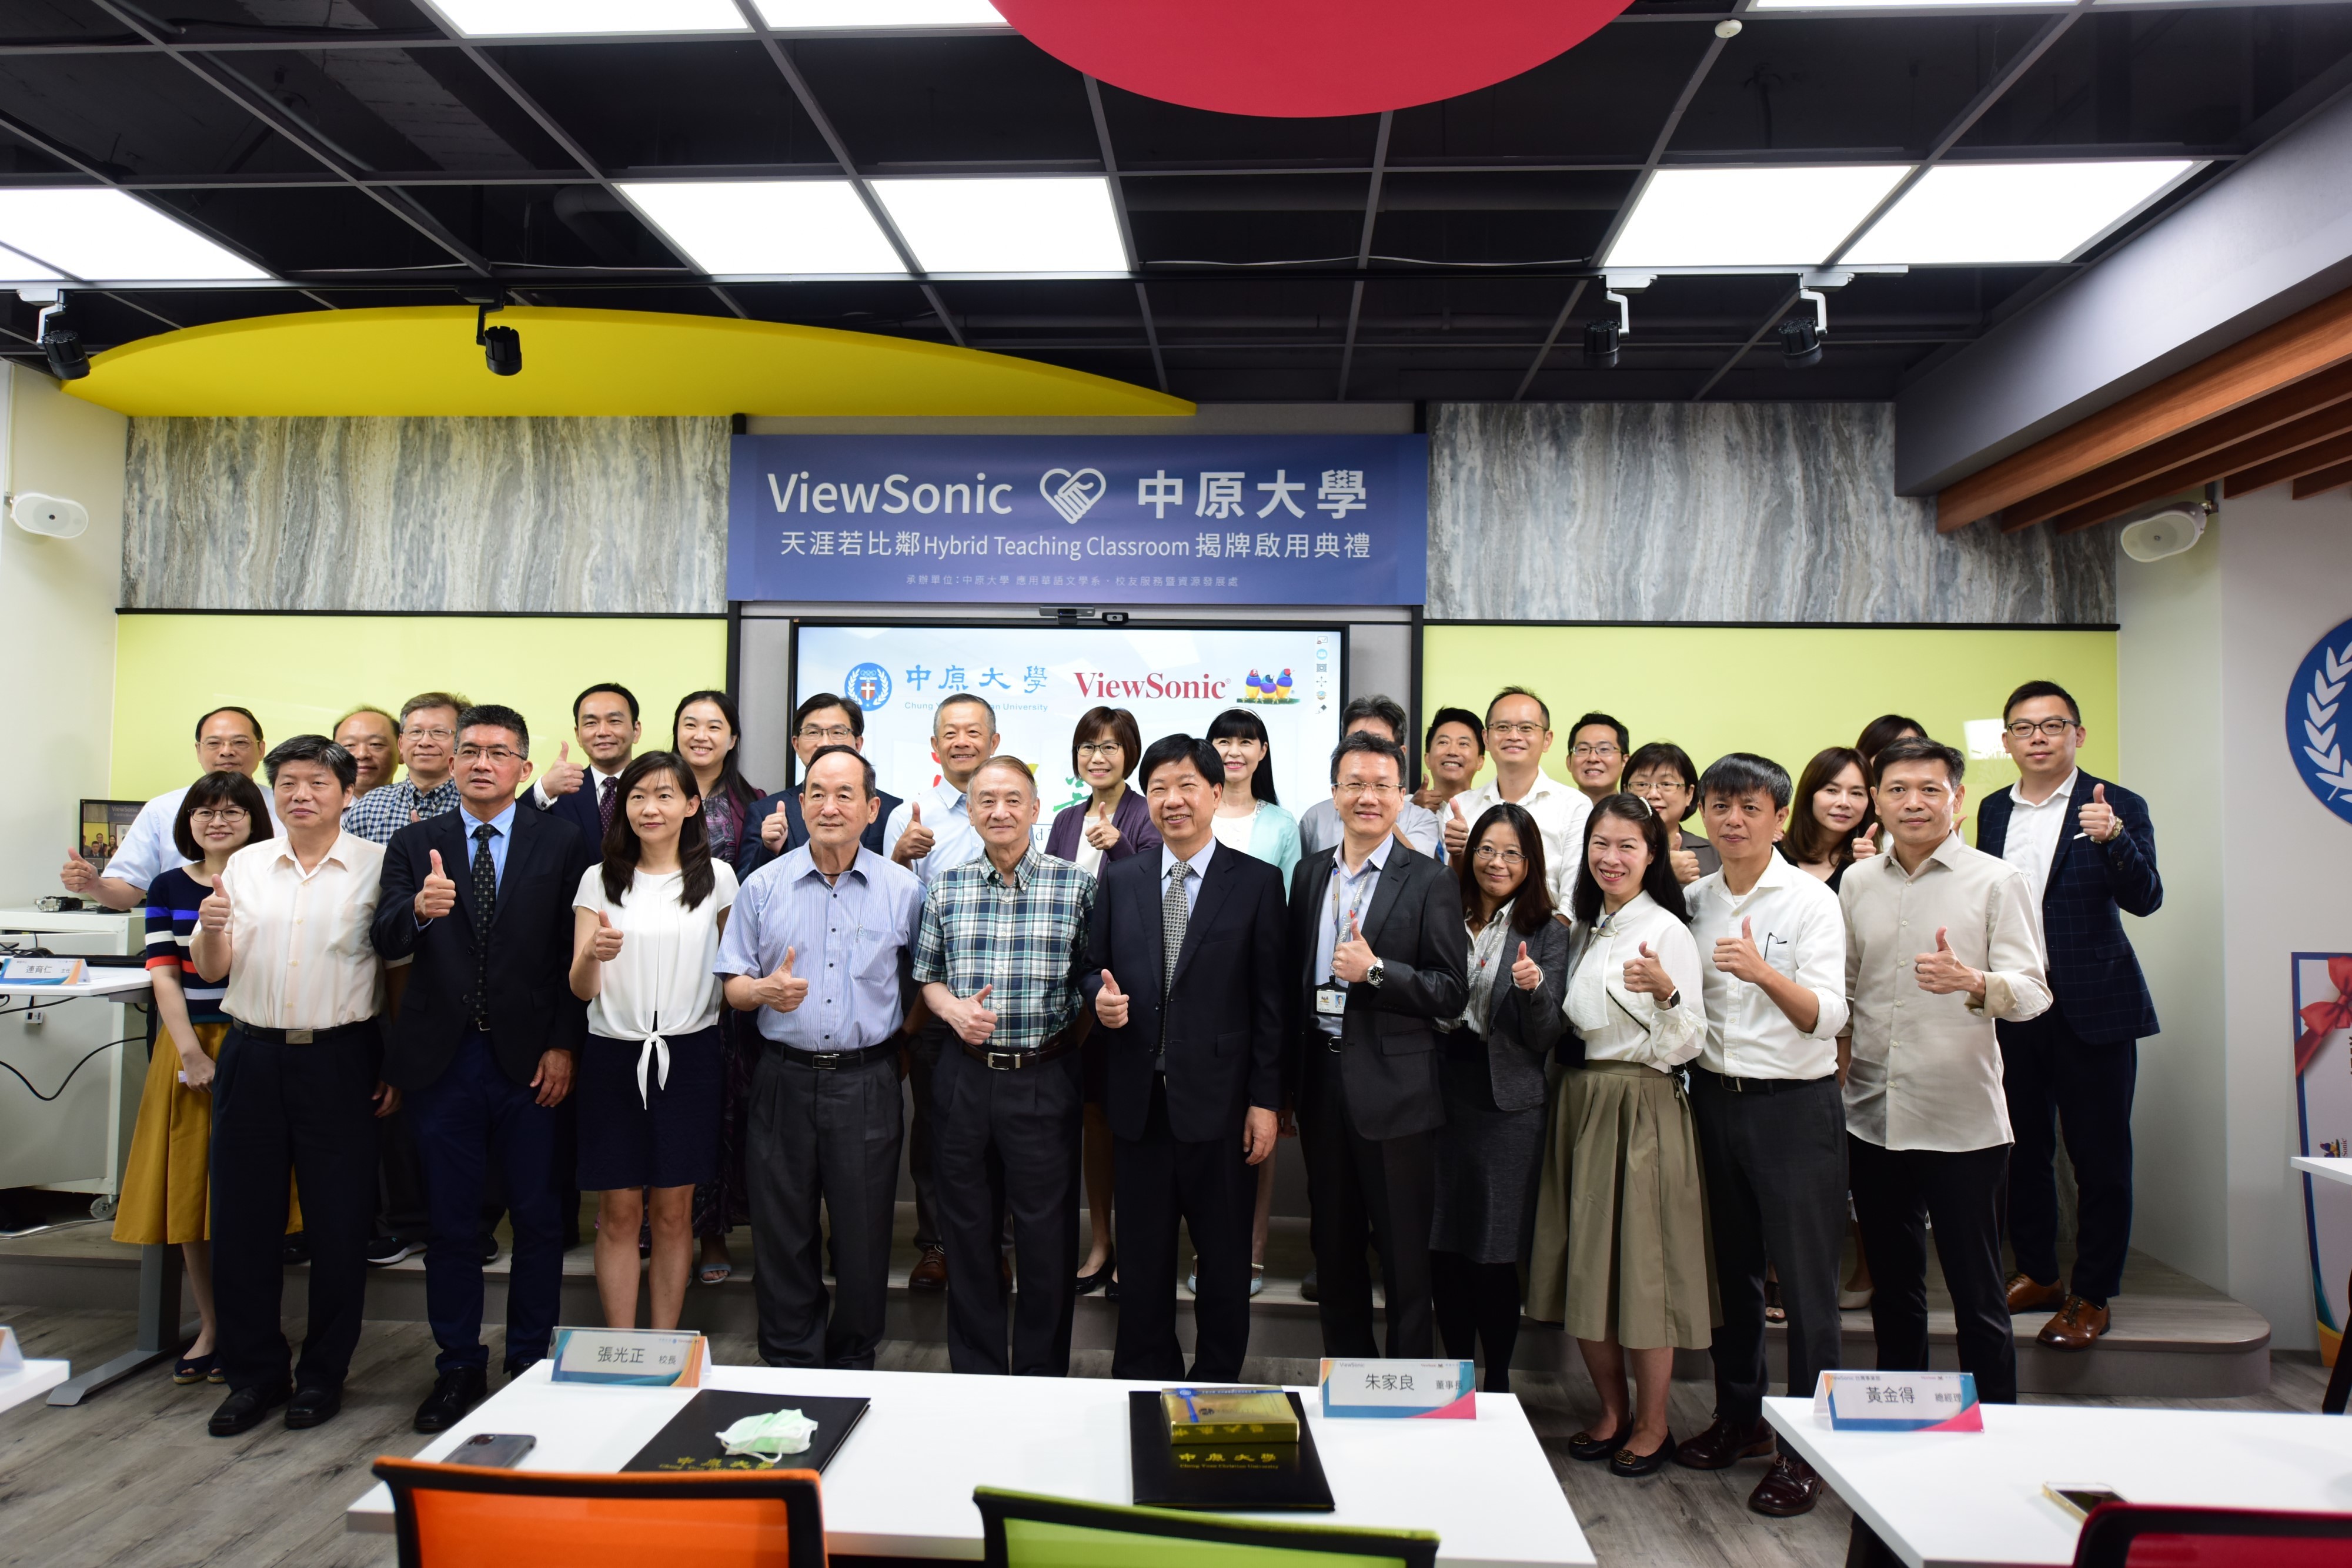 中原大學宣布與ViewSonic合作，攜手打造全球第一間ViewSonic_Hybrid複合教學教室